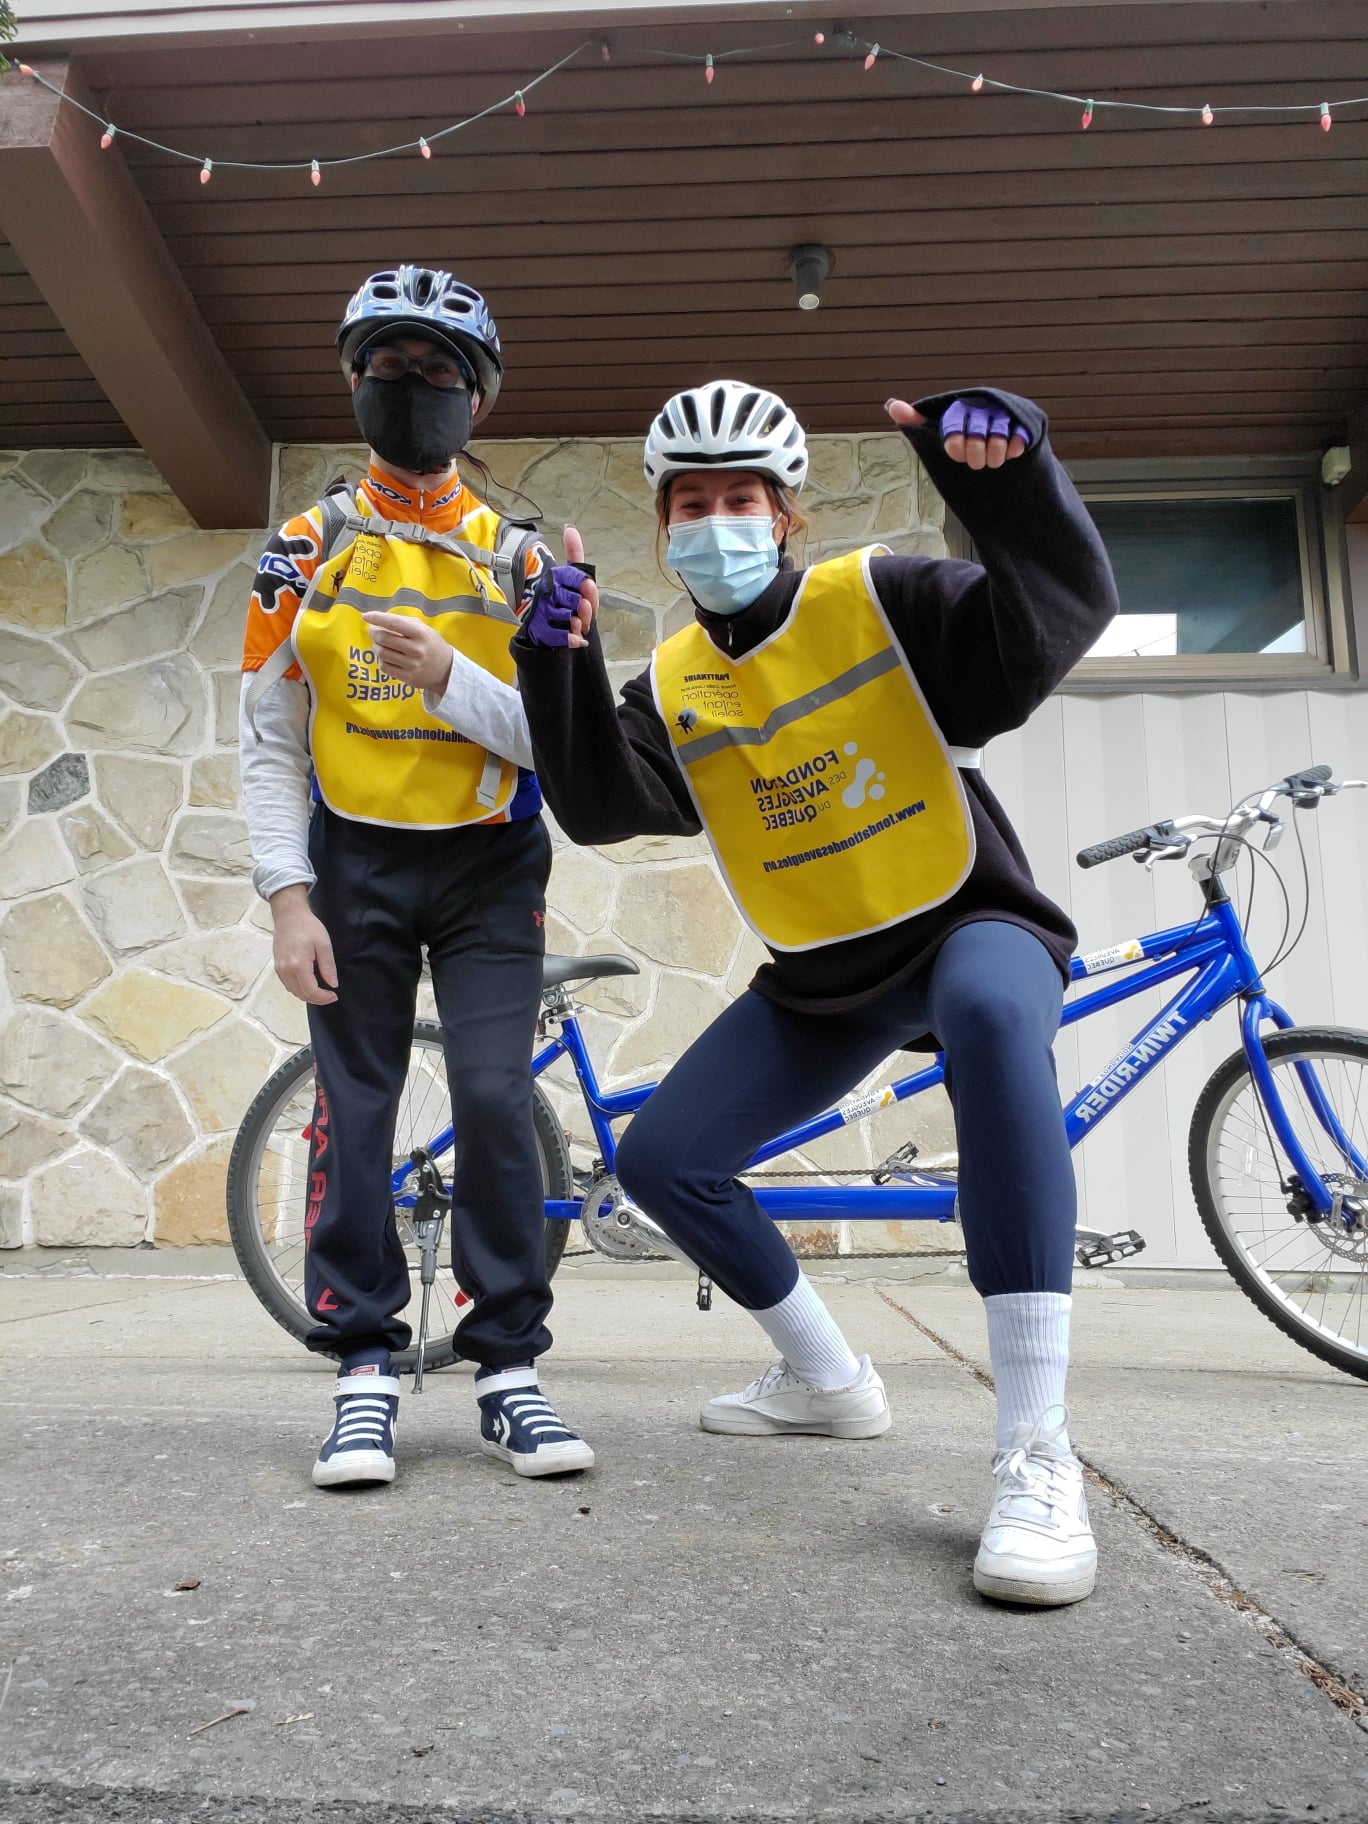 Un égo portrait d’une accompagnatrice avec les pouces levés et un participant. Un vélo-tandem est visible en arrière-plan.